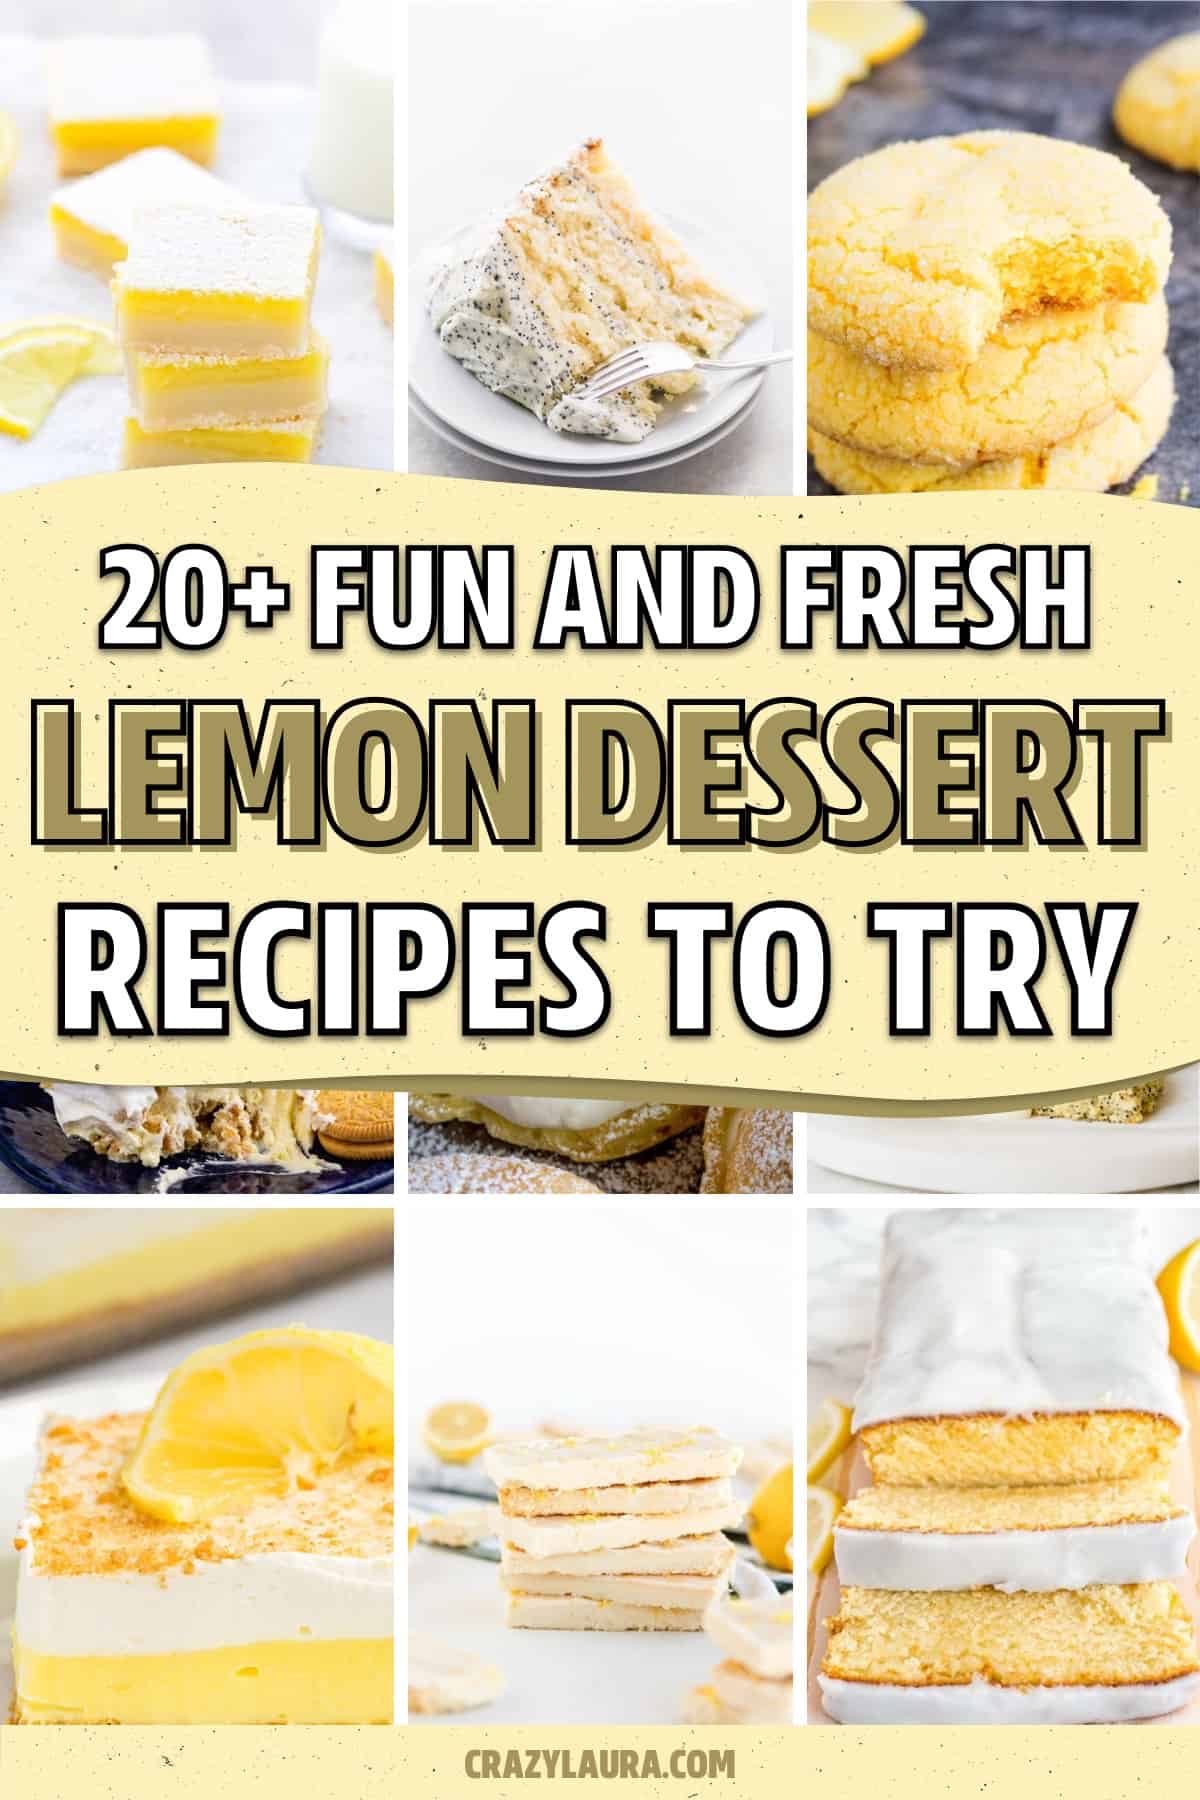 lemon baked treat recipe examples